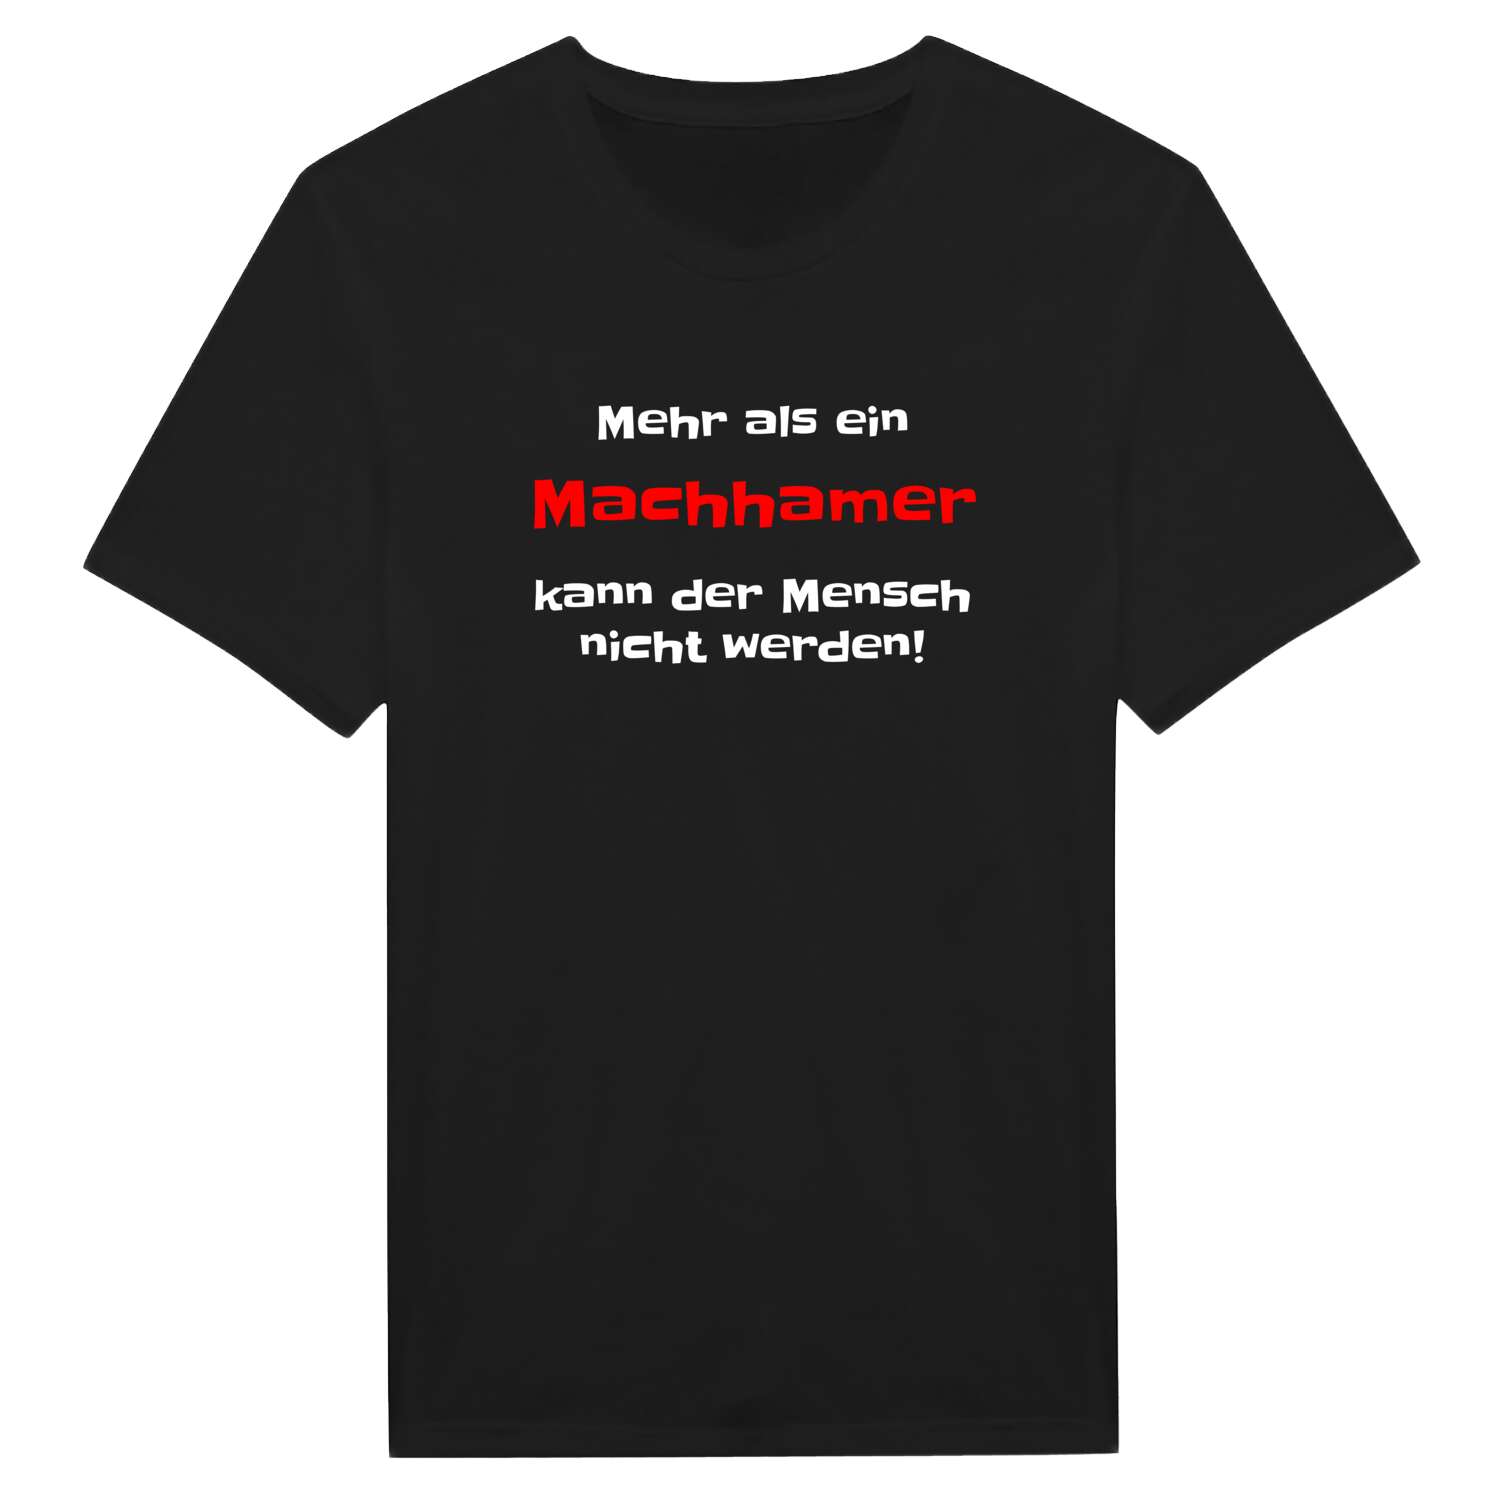 Machham T-Shirt »Mehr als ein«